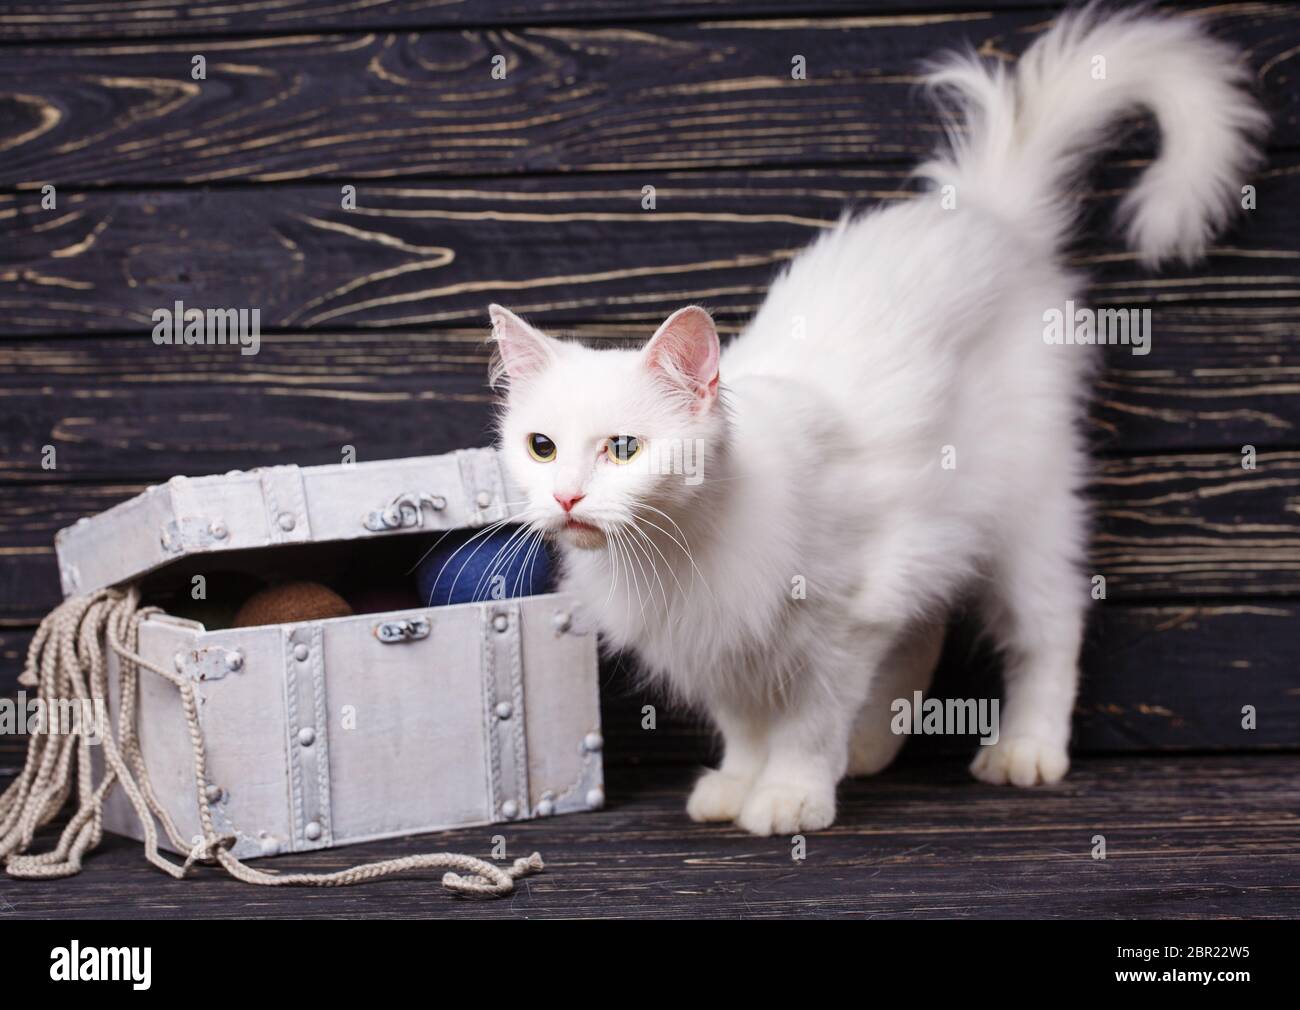 White cat hogging vicino al petto con sfere. Gatto con il tail rialzato Foto Stock